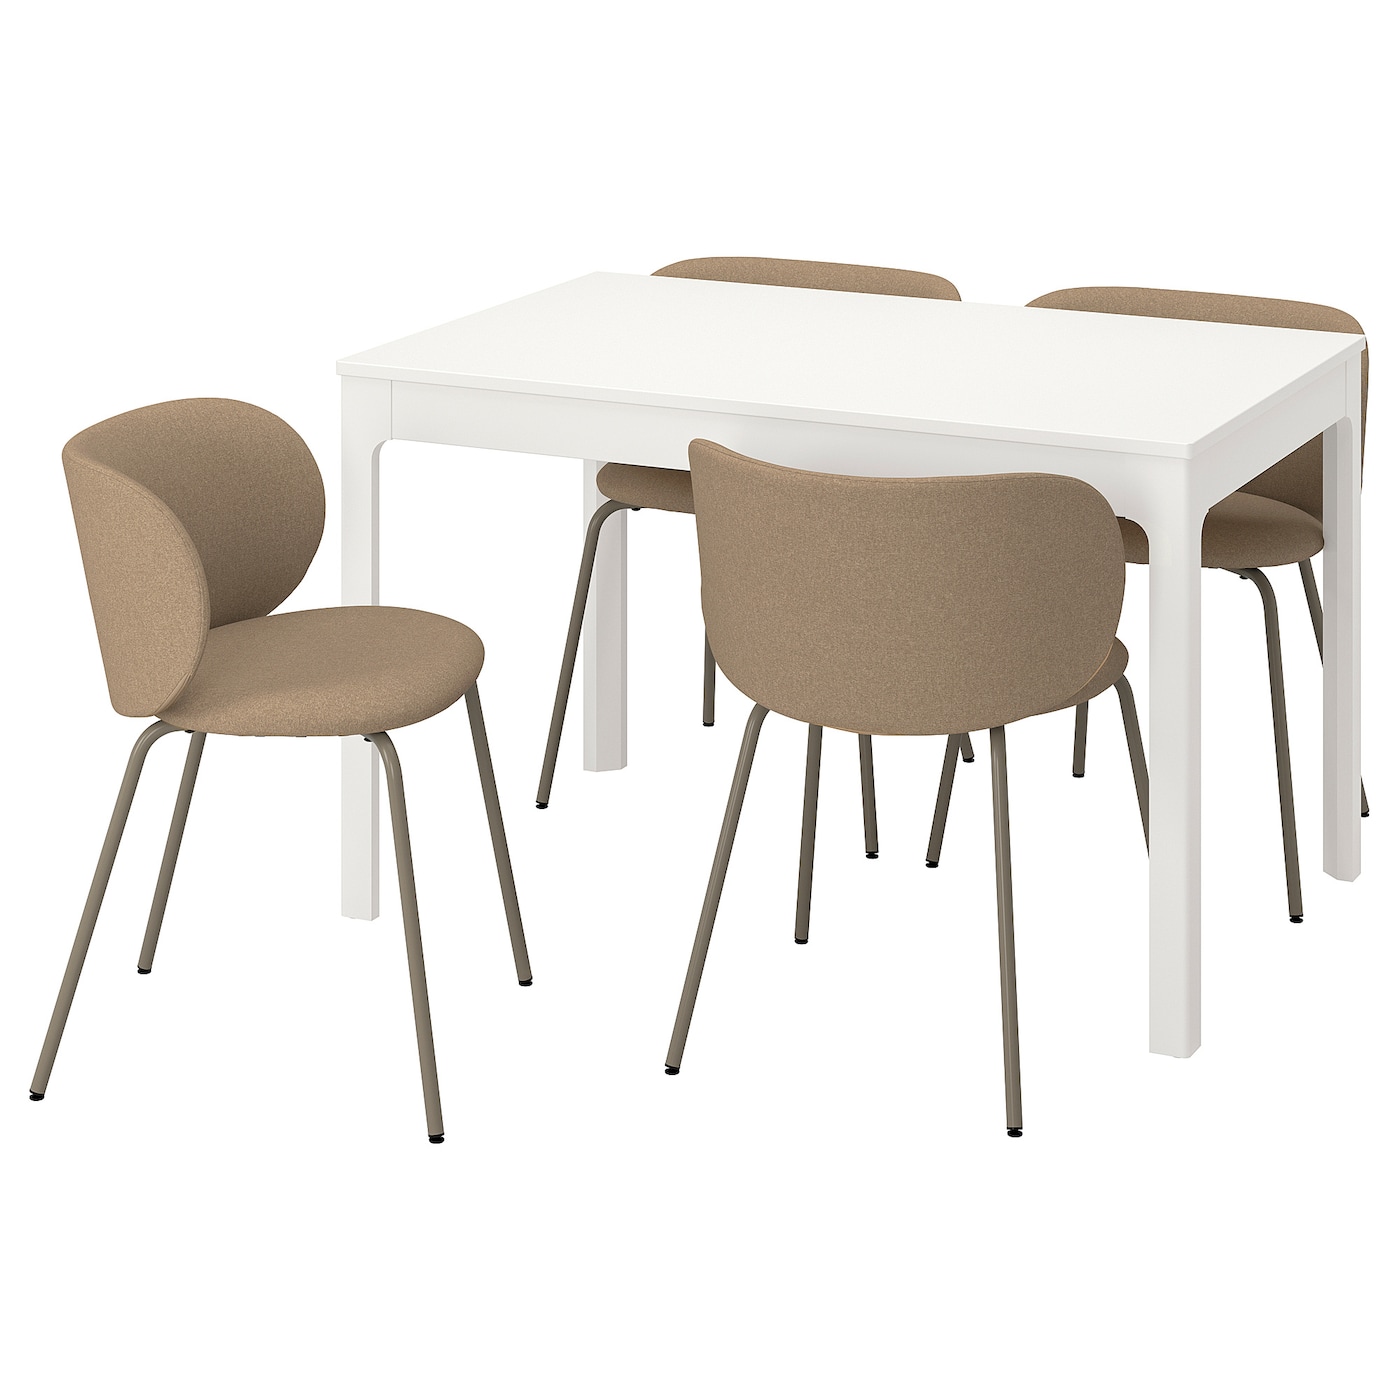 Стол и 4 стула - EKEDALEN / KRYLBO IKEA/ ЭКЕДАЛЕН/КРЫЛЬБО ИКЕА, 180/120х80х75 см, белый/коричневый